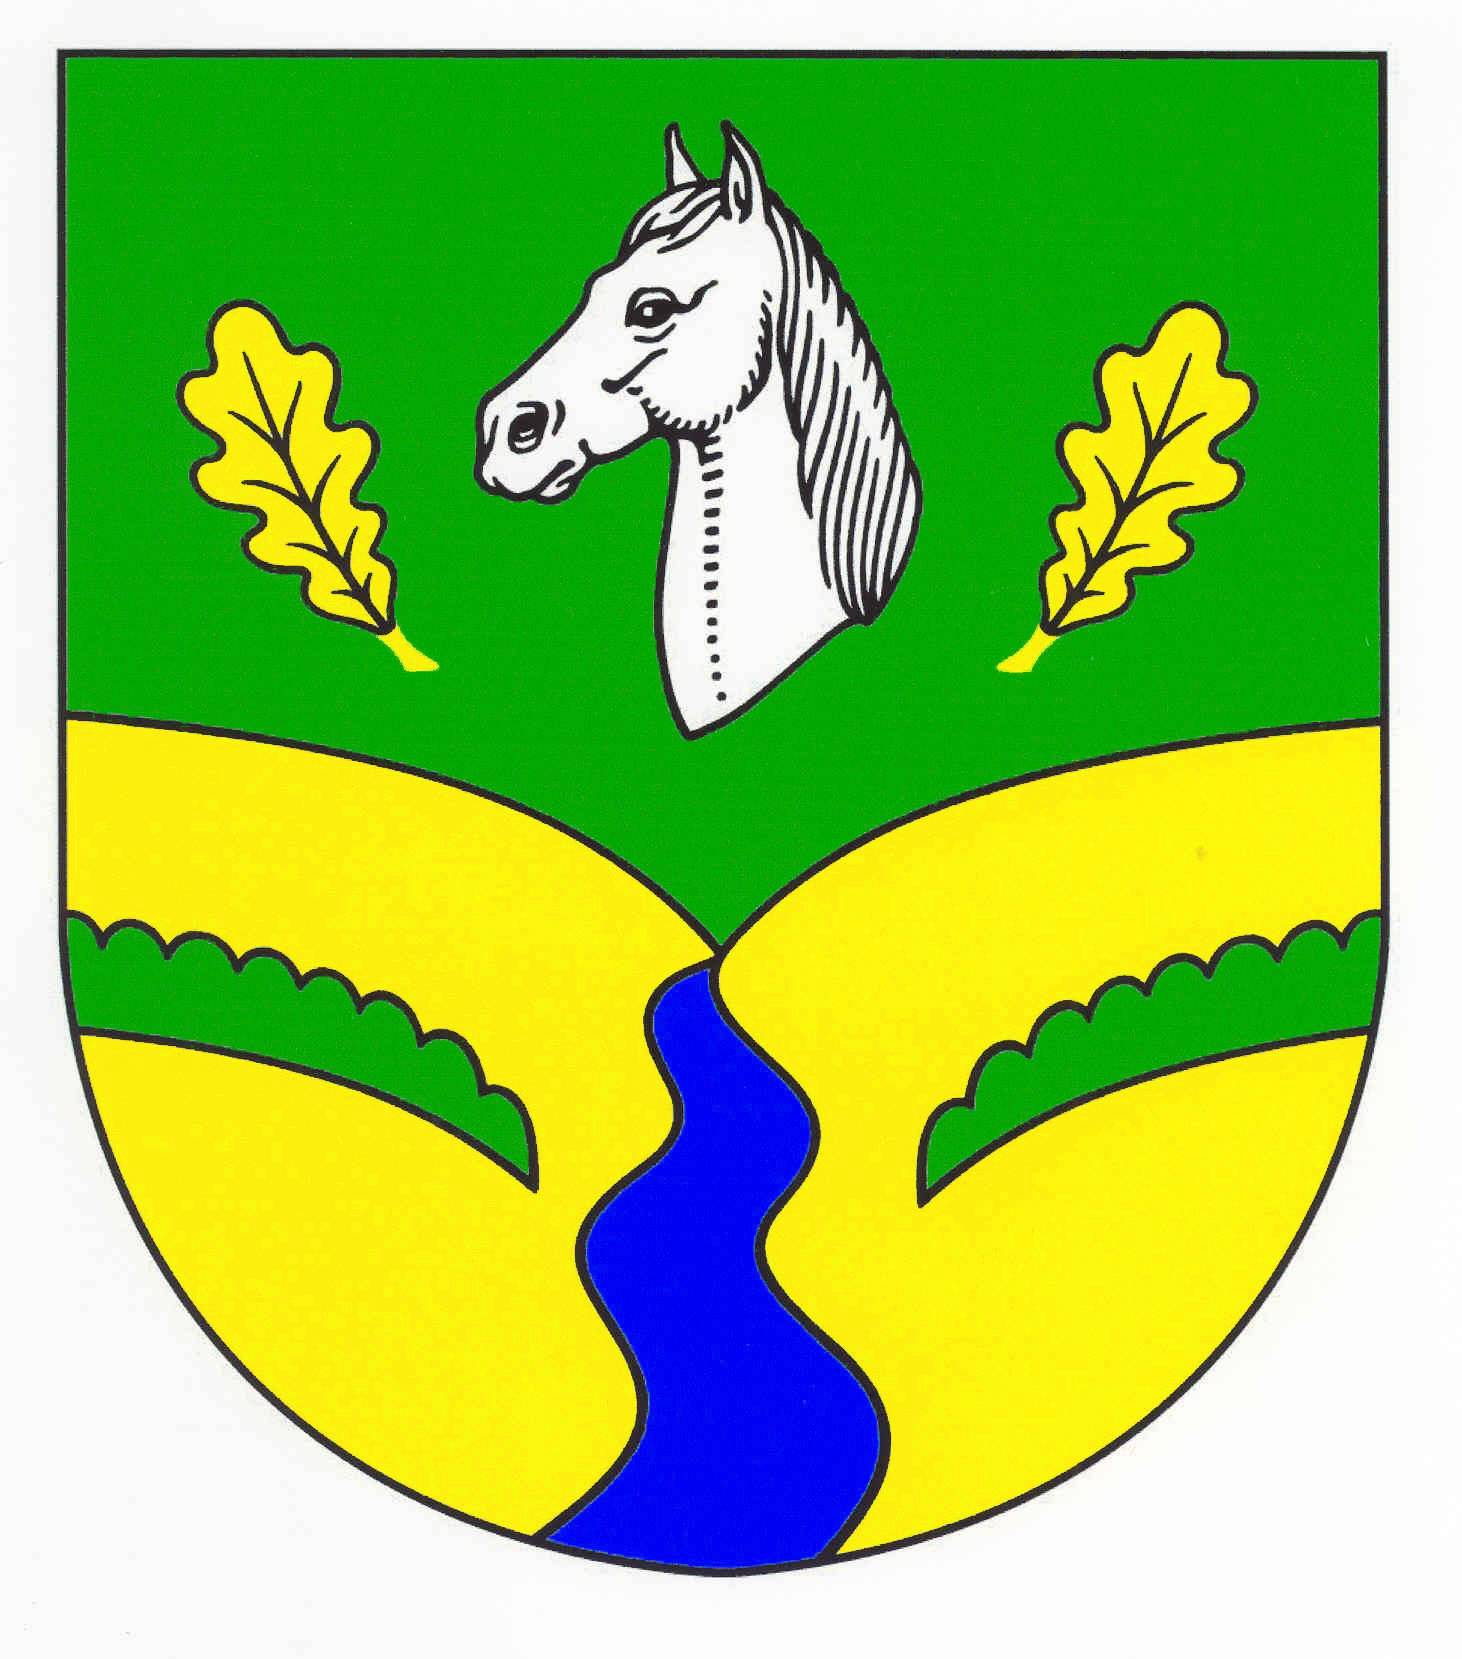 Wappen Gemeinde Traventhal, Kreis Segeberg